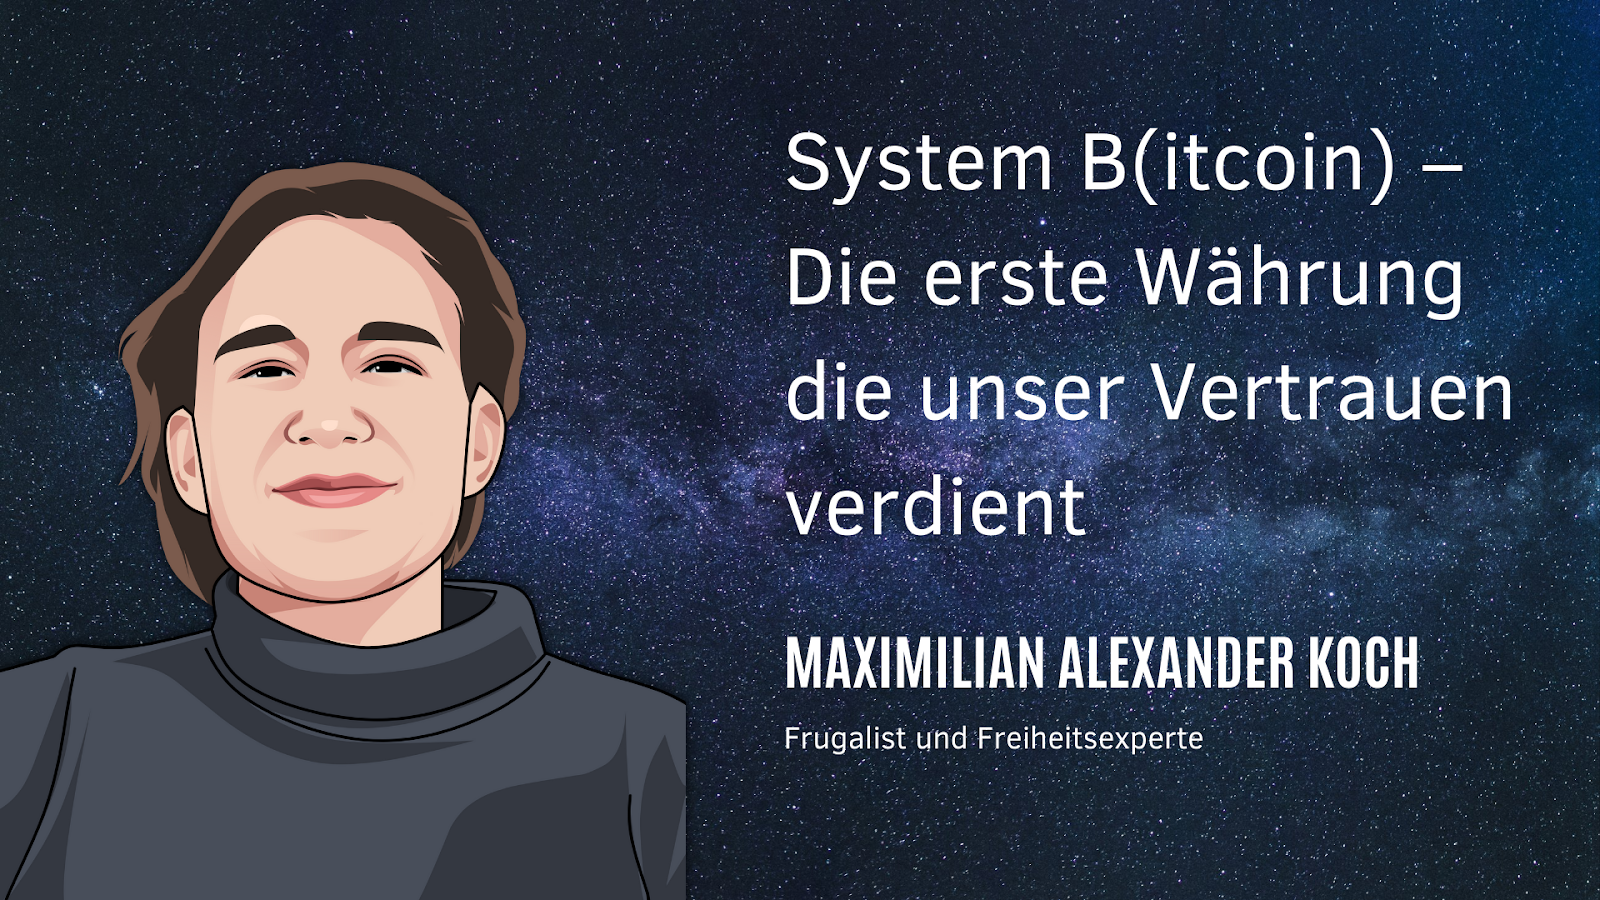 Experte für den frugalistischen Lebensstil Maximilian Alexander Koch ein umfangreiches Live-Webinar mit dem Titel: “System B(itcoin) - Die erste Währung, die unser Vertrauen verdient”